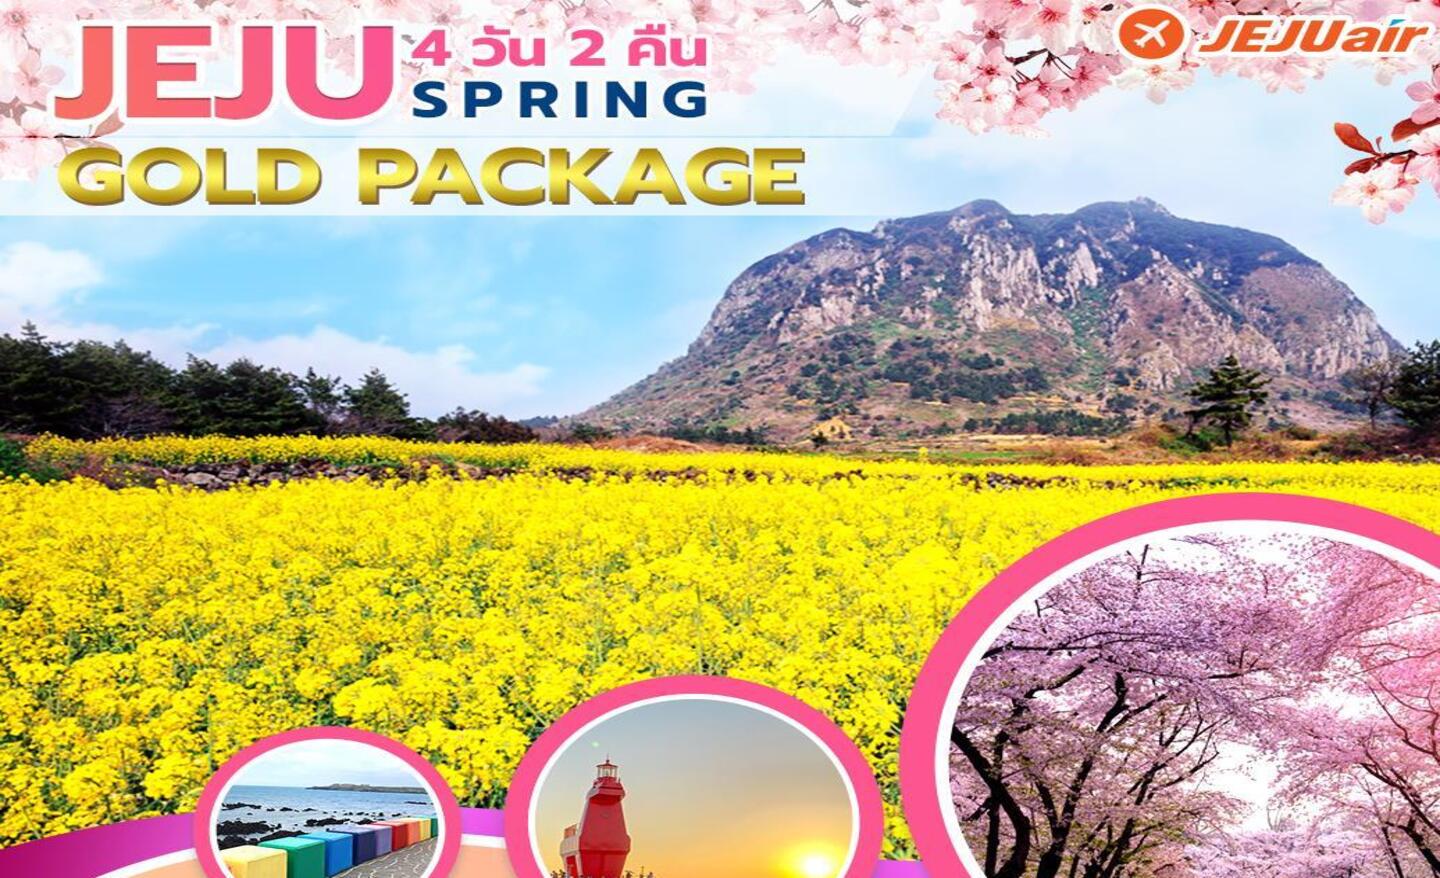 ทัวร์เกาหลี Jeju Gold Package Spring (มี.ค.-เม.ย. 66)